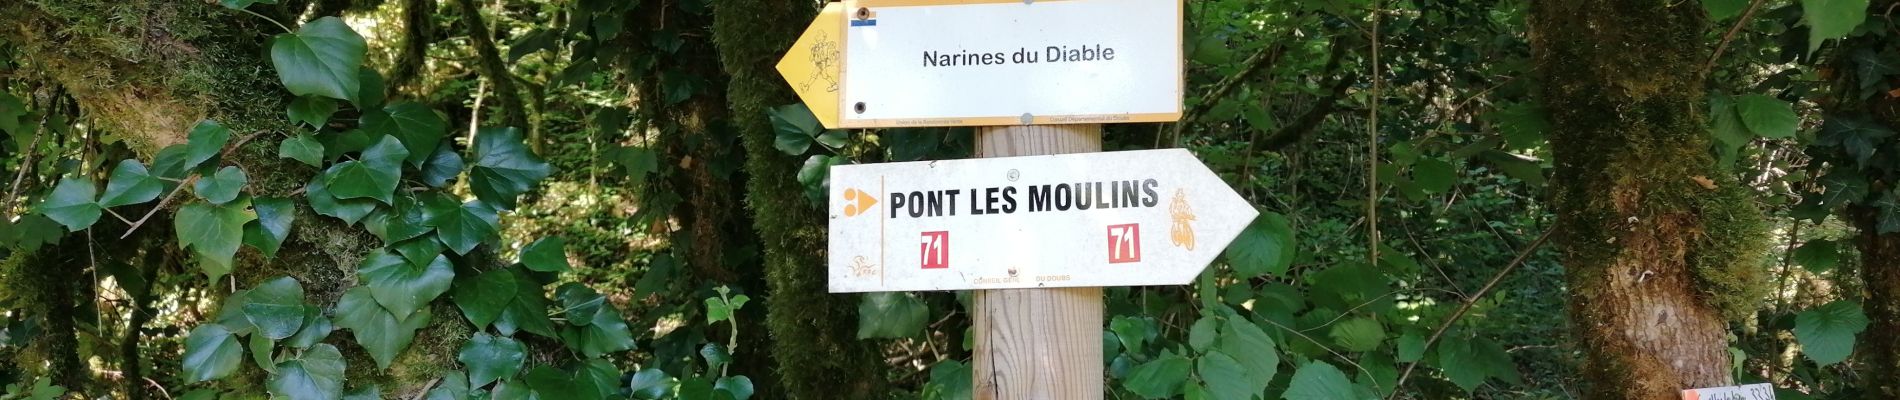 Excursión Senderismo Pont-les-Moulins - 2020 07 12 Guillon, les narines du diable - Photo